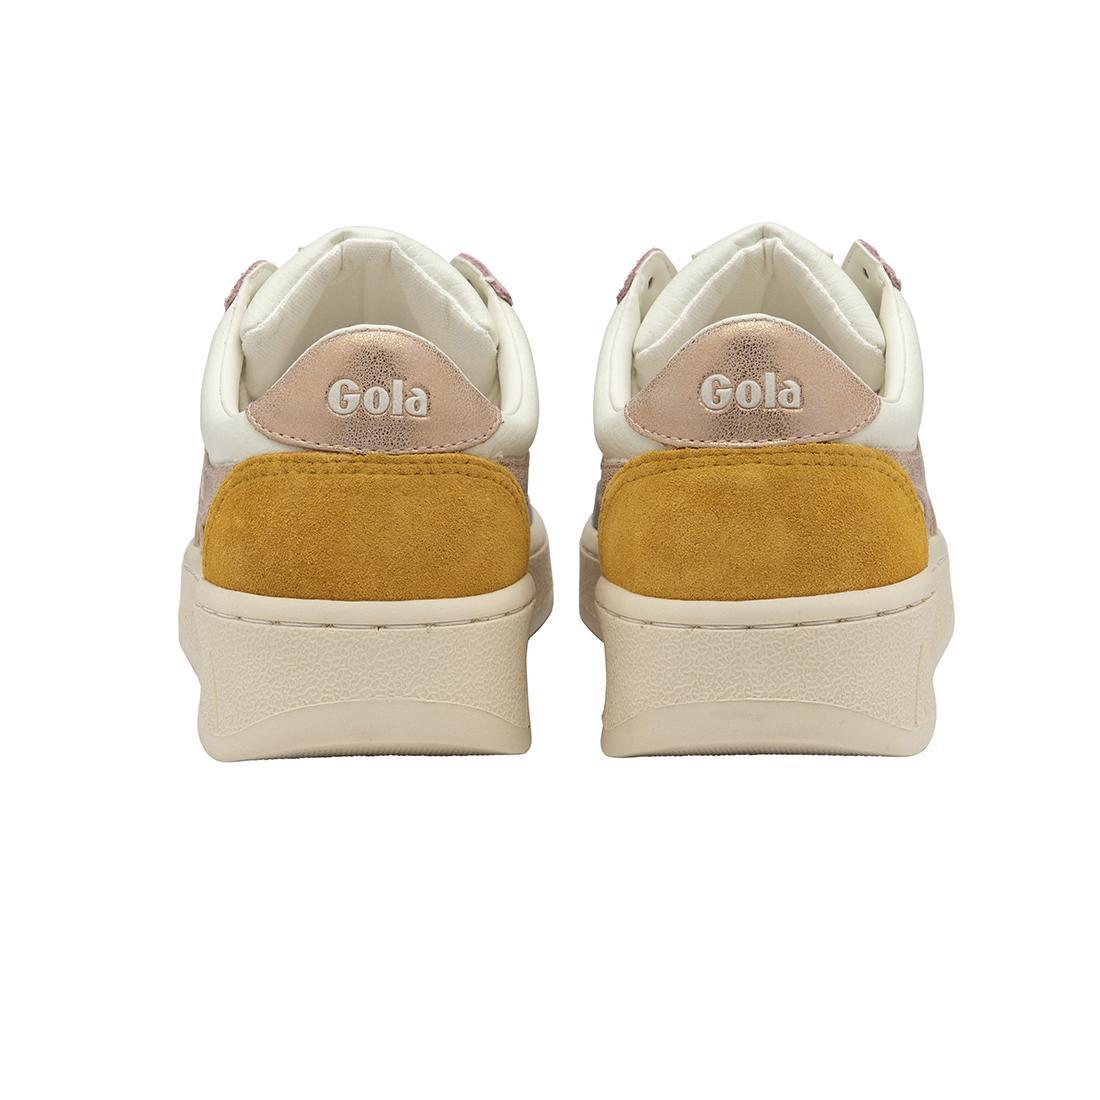 gola grandslam quadrant sneaker in off whiteashrose goldsun 97853